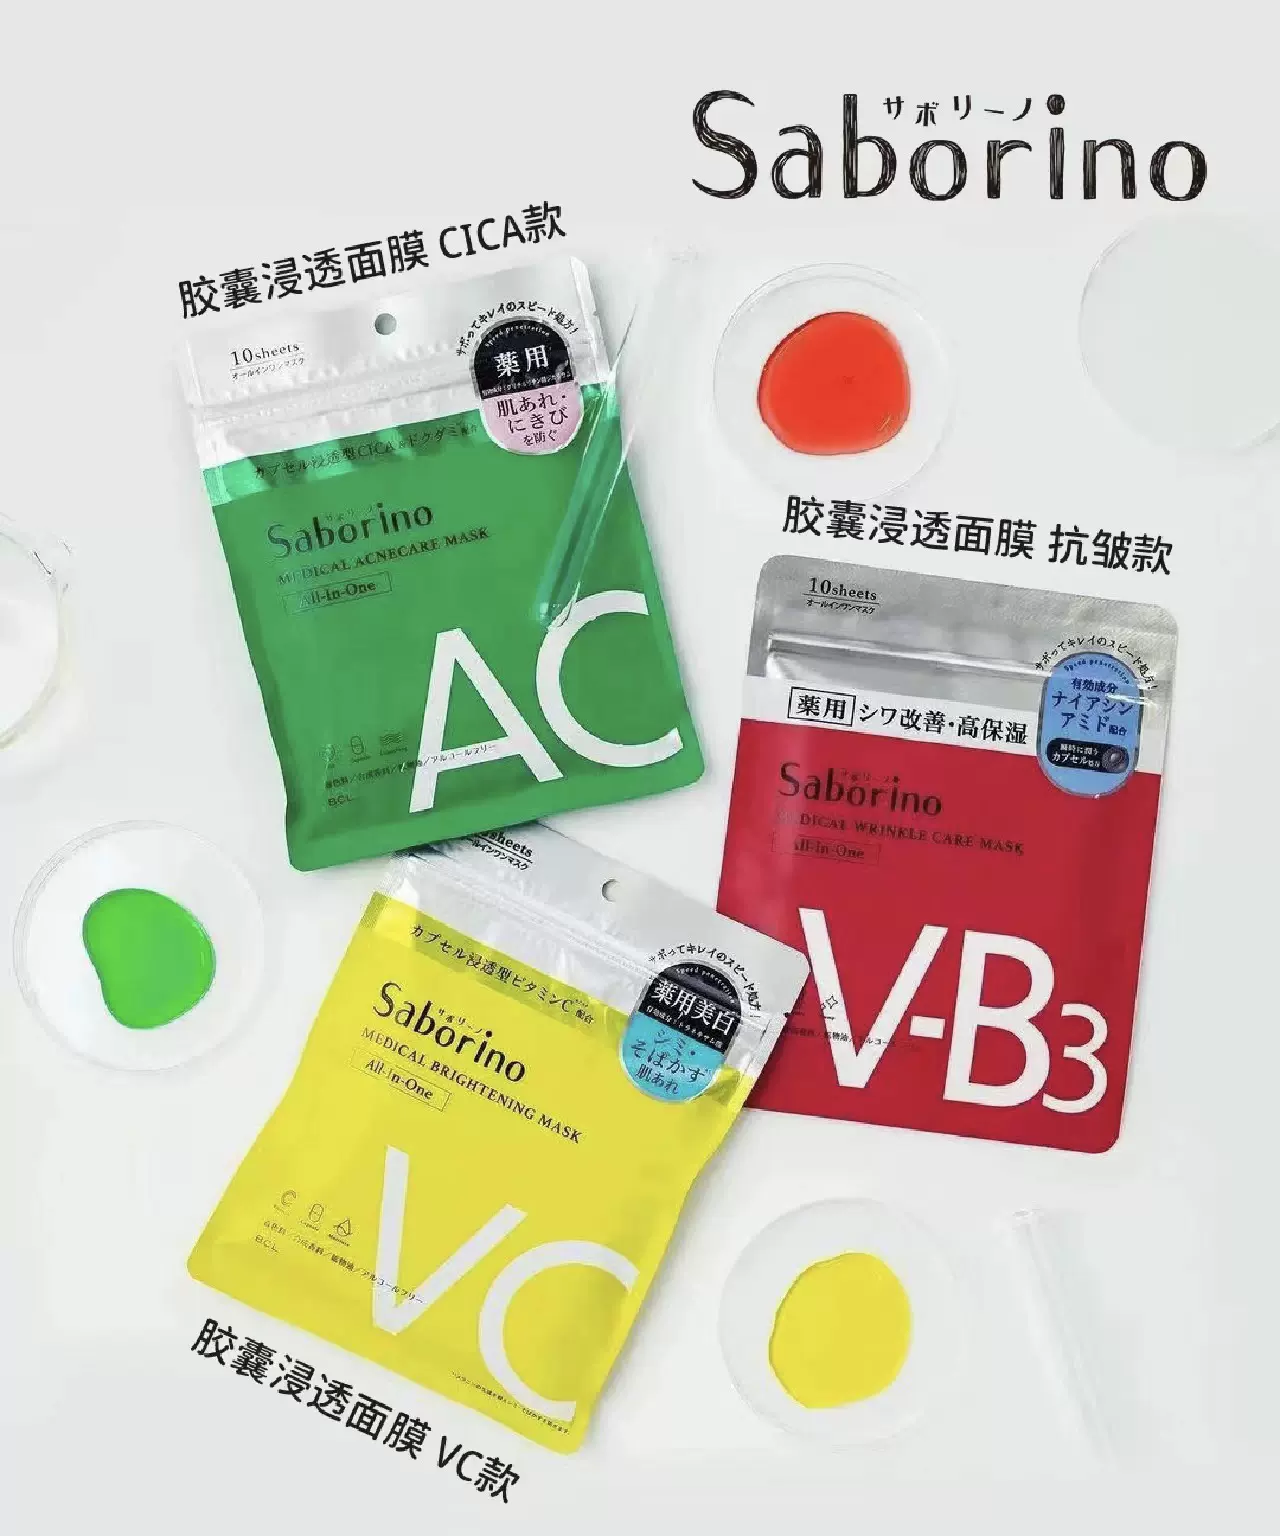 新品日本bcl saborino cica面膜痘肌舒缓保湿vc美白面膜10枚包邮-Taobao